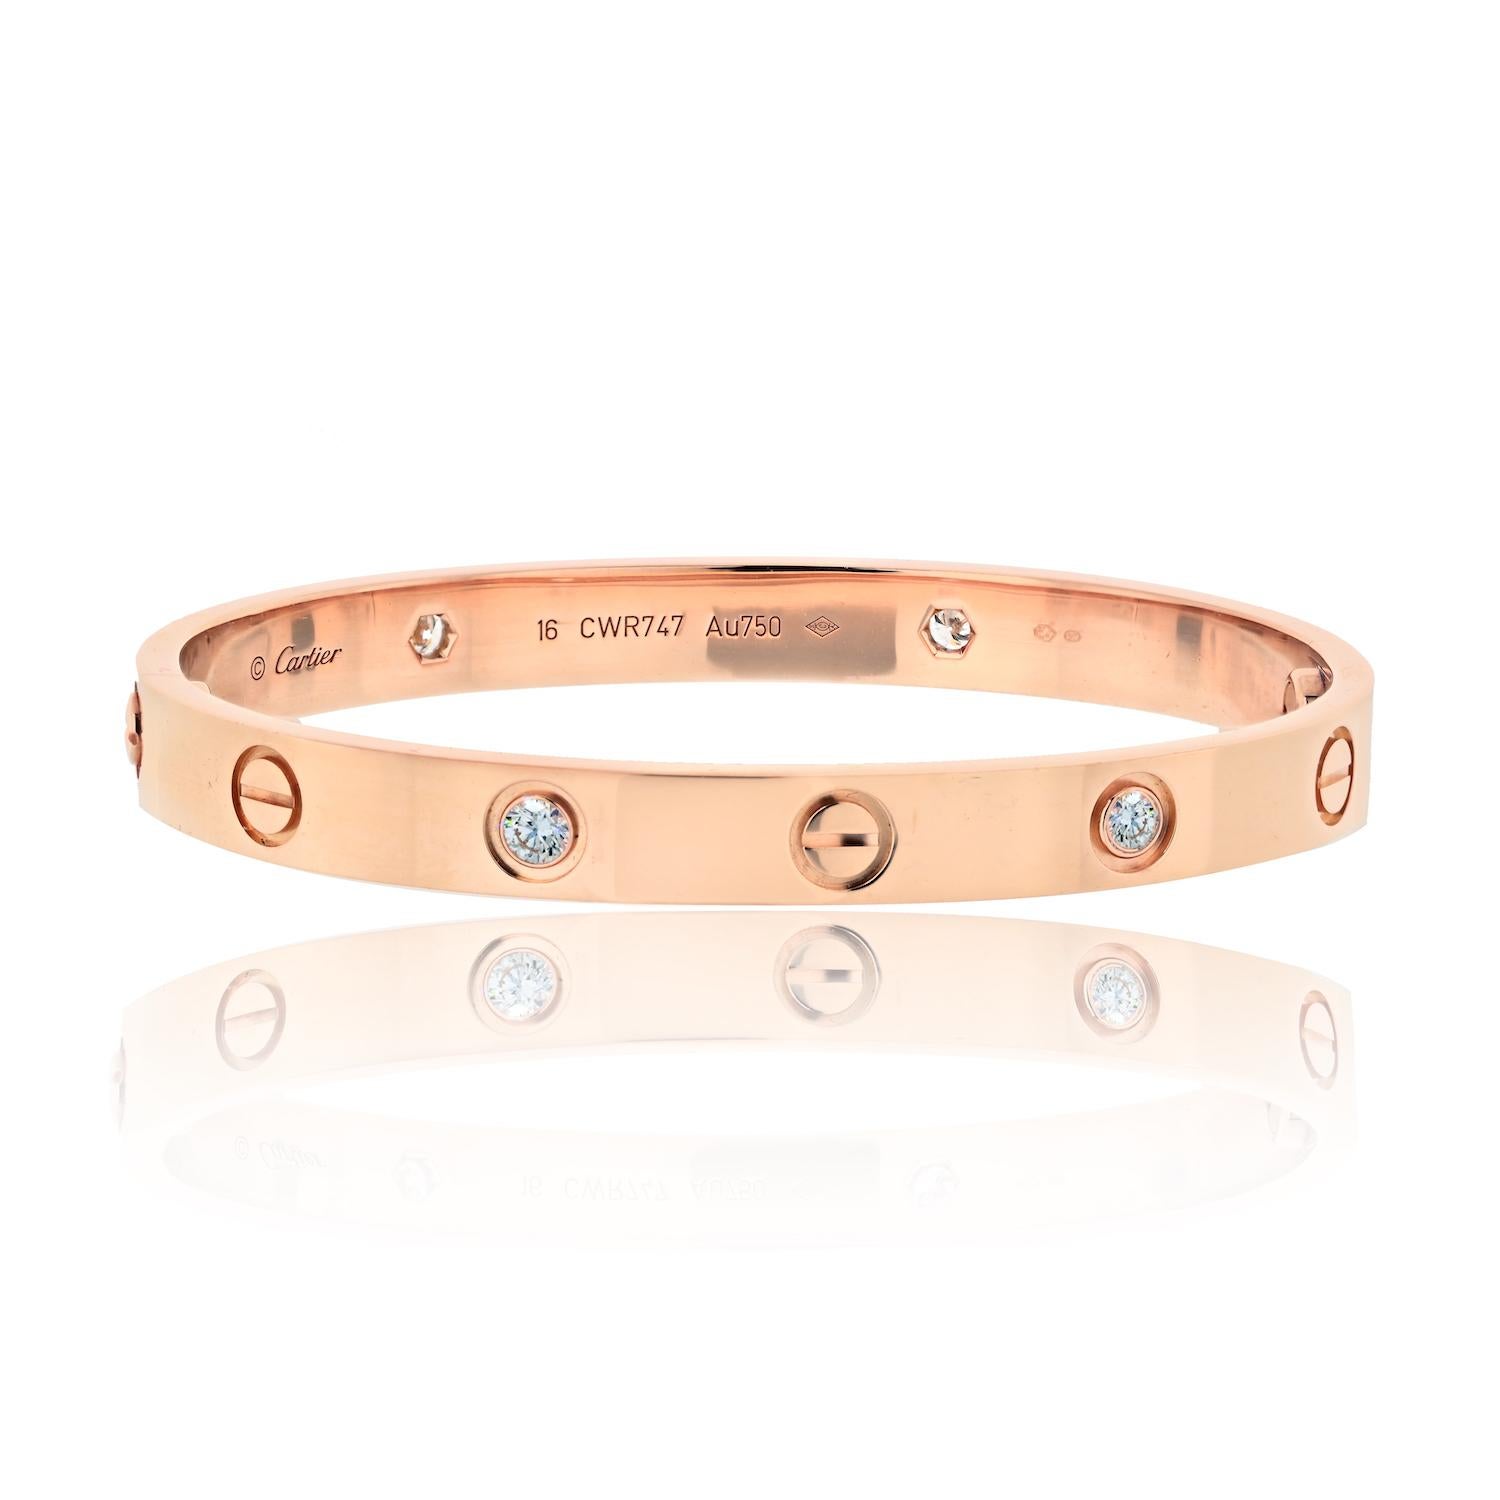 Le bracelet d'occasion en or rose 18 carats Love With 4 Diamonds de Cartier est un superbe bijou qui respire l'élégance et la sophistication. Ce bracelet est en excellent état et a été bien entretenu, ce qui lui confère un aspect neuf. 

 Avec une